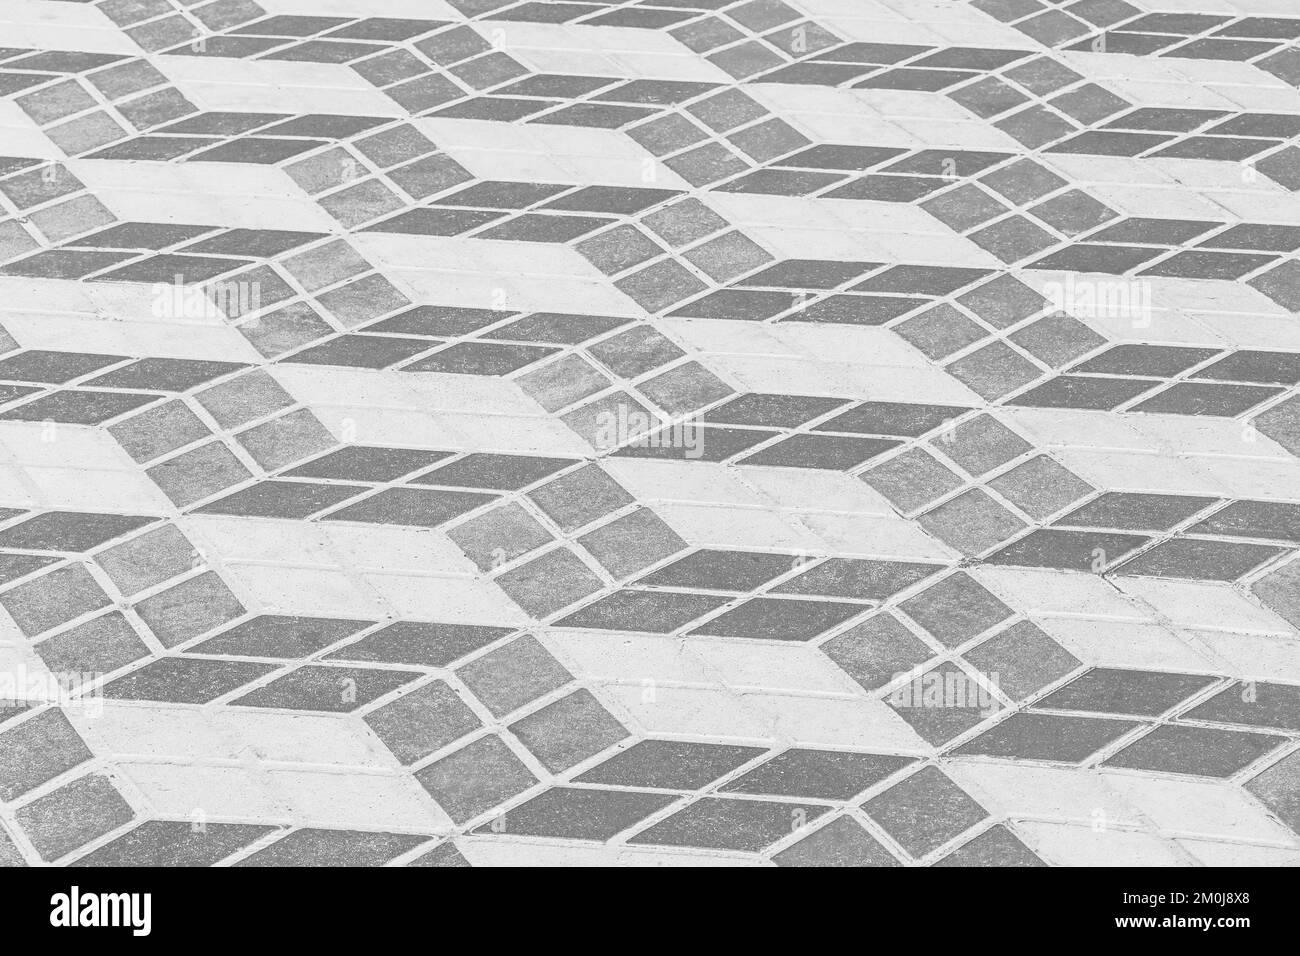 Dunkle und helle Fliesen mit abstraktem geometrischem Quadratmuster für die Pflastertextur Straßenkultur im urbanen Hintergrund. Stockfoto